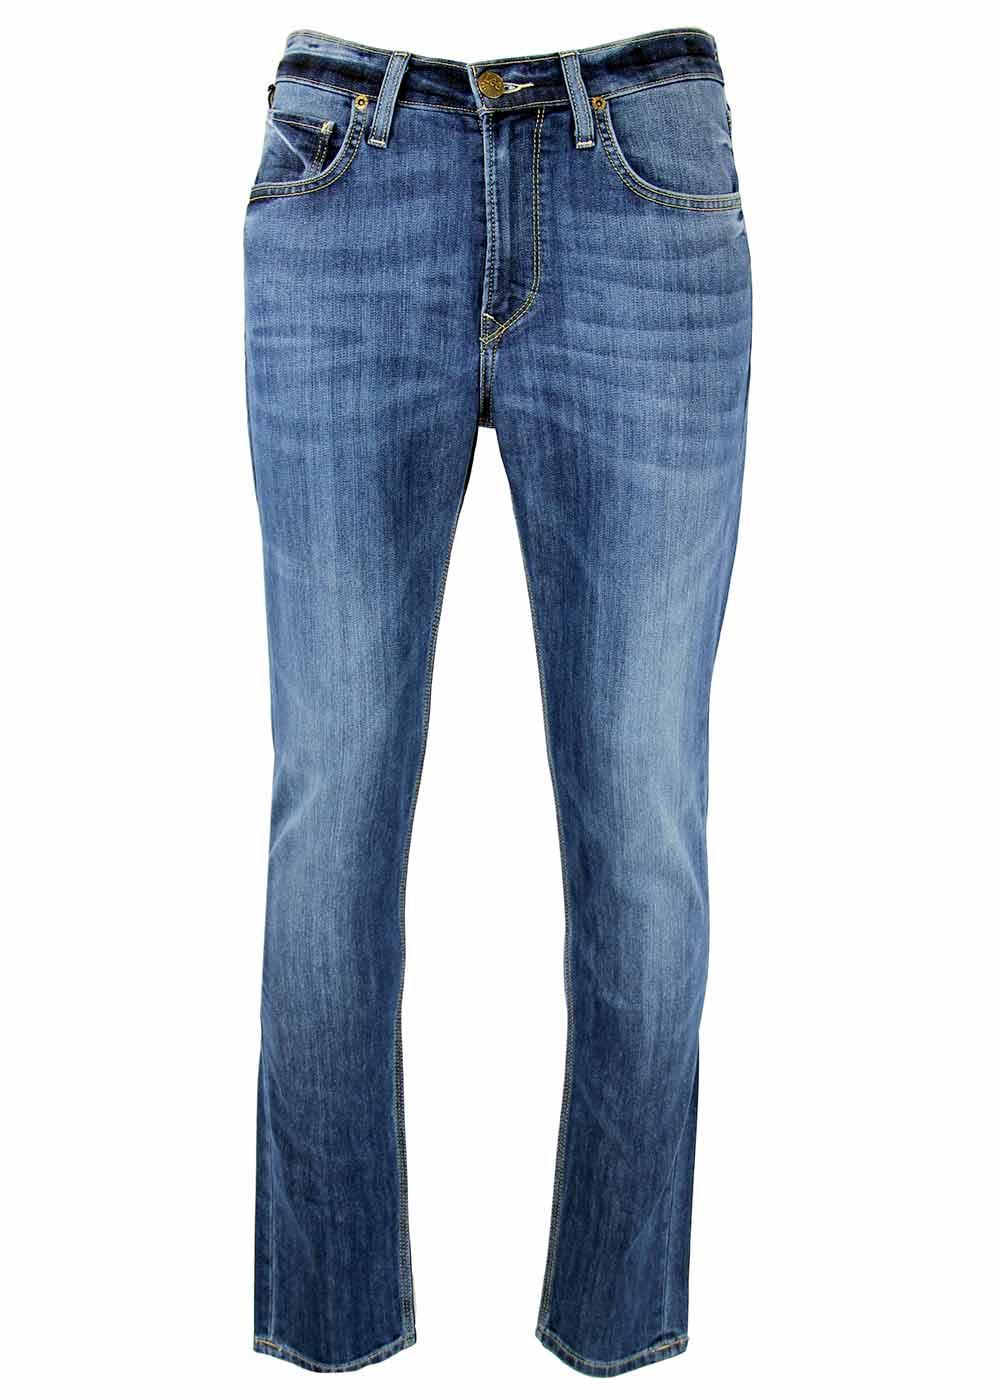 Arvin LEE Retro Mod Regular Tapered Denim Jeans BL